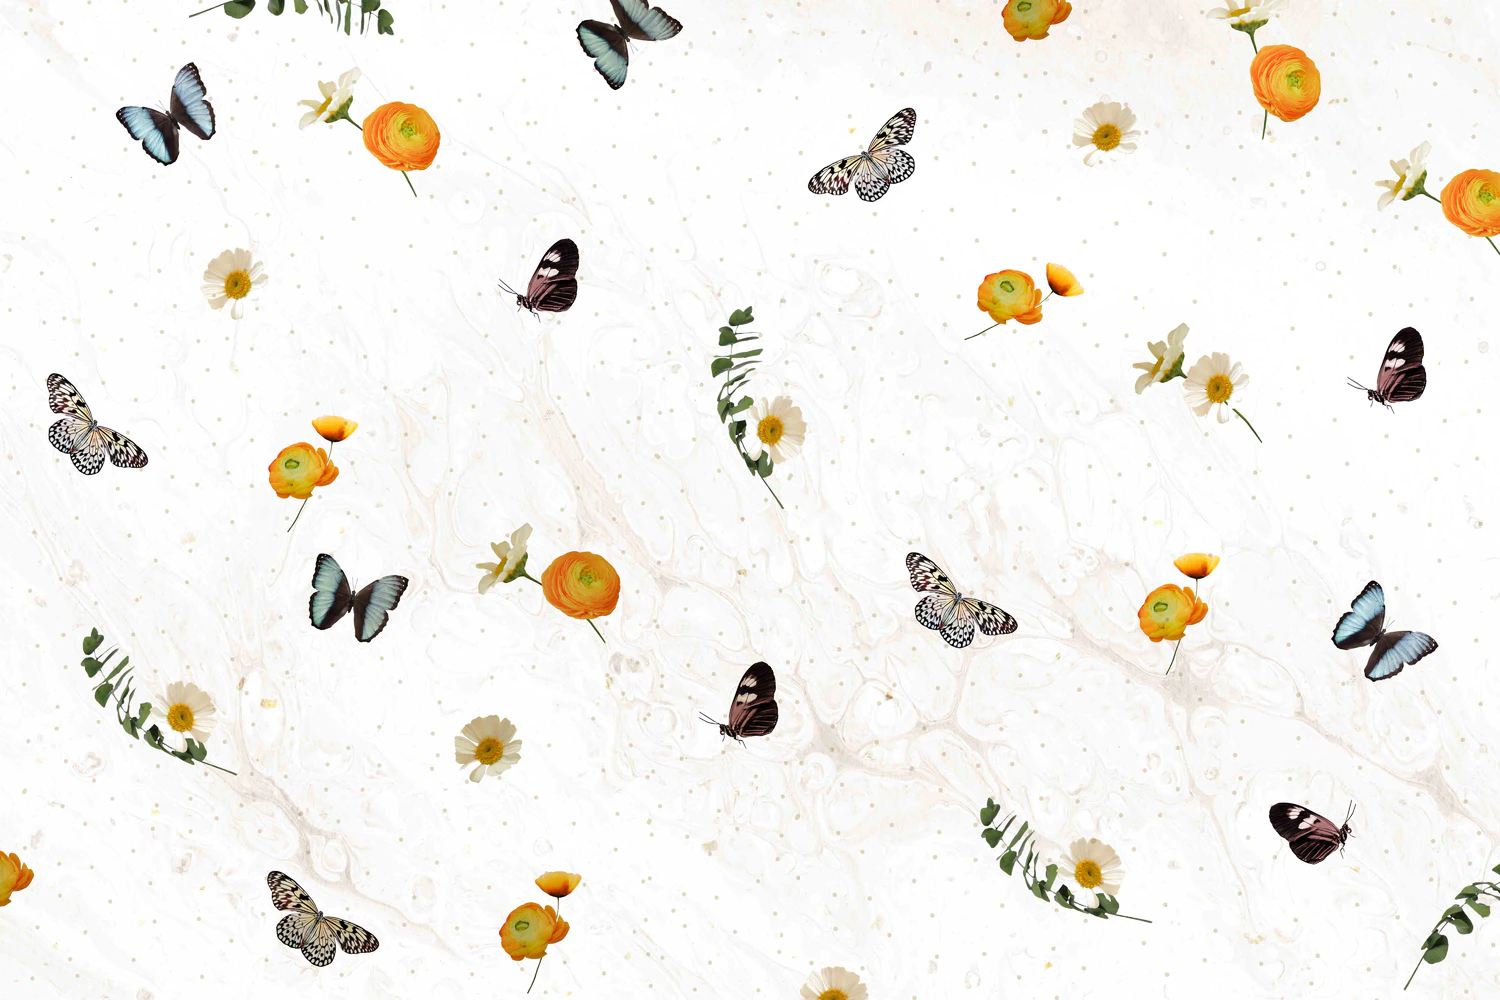 3229 25个蝴蝶拼贴纸纹理图案JPG素材 25 Butterfly Textures